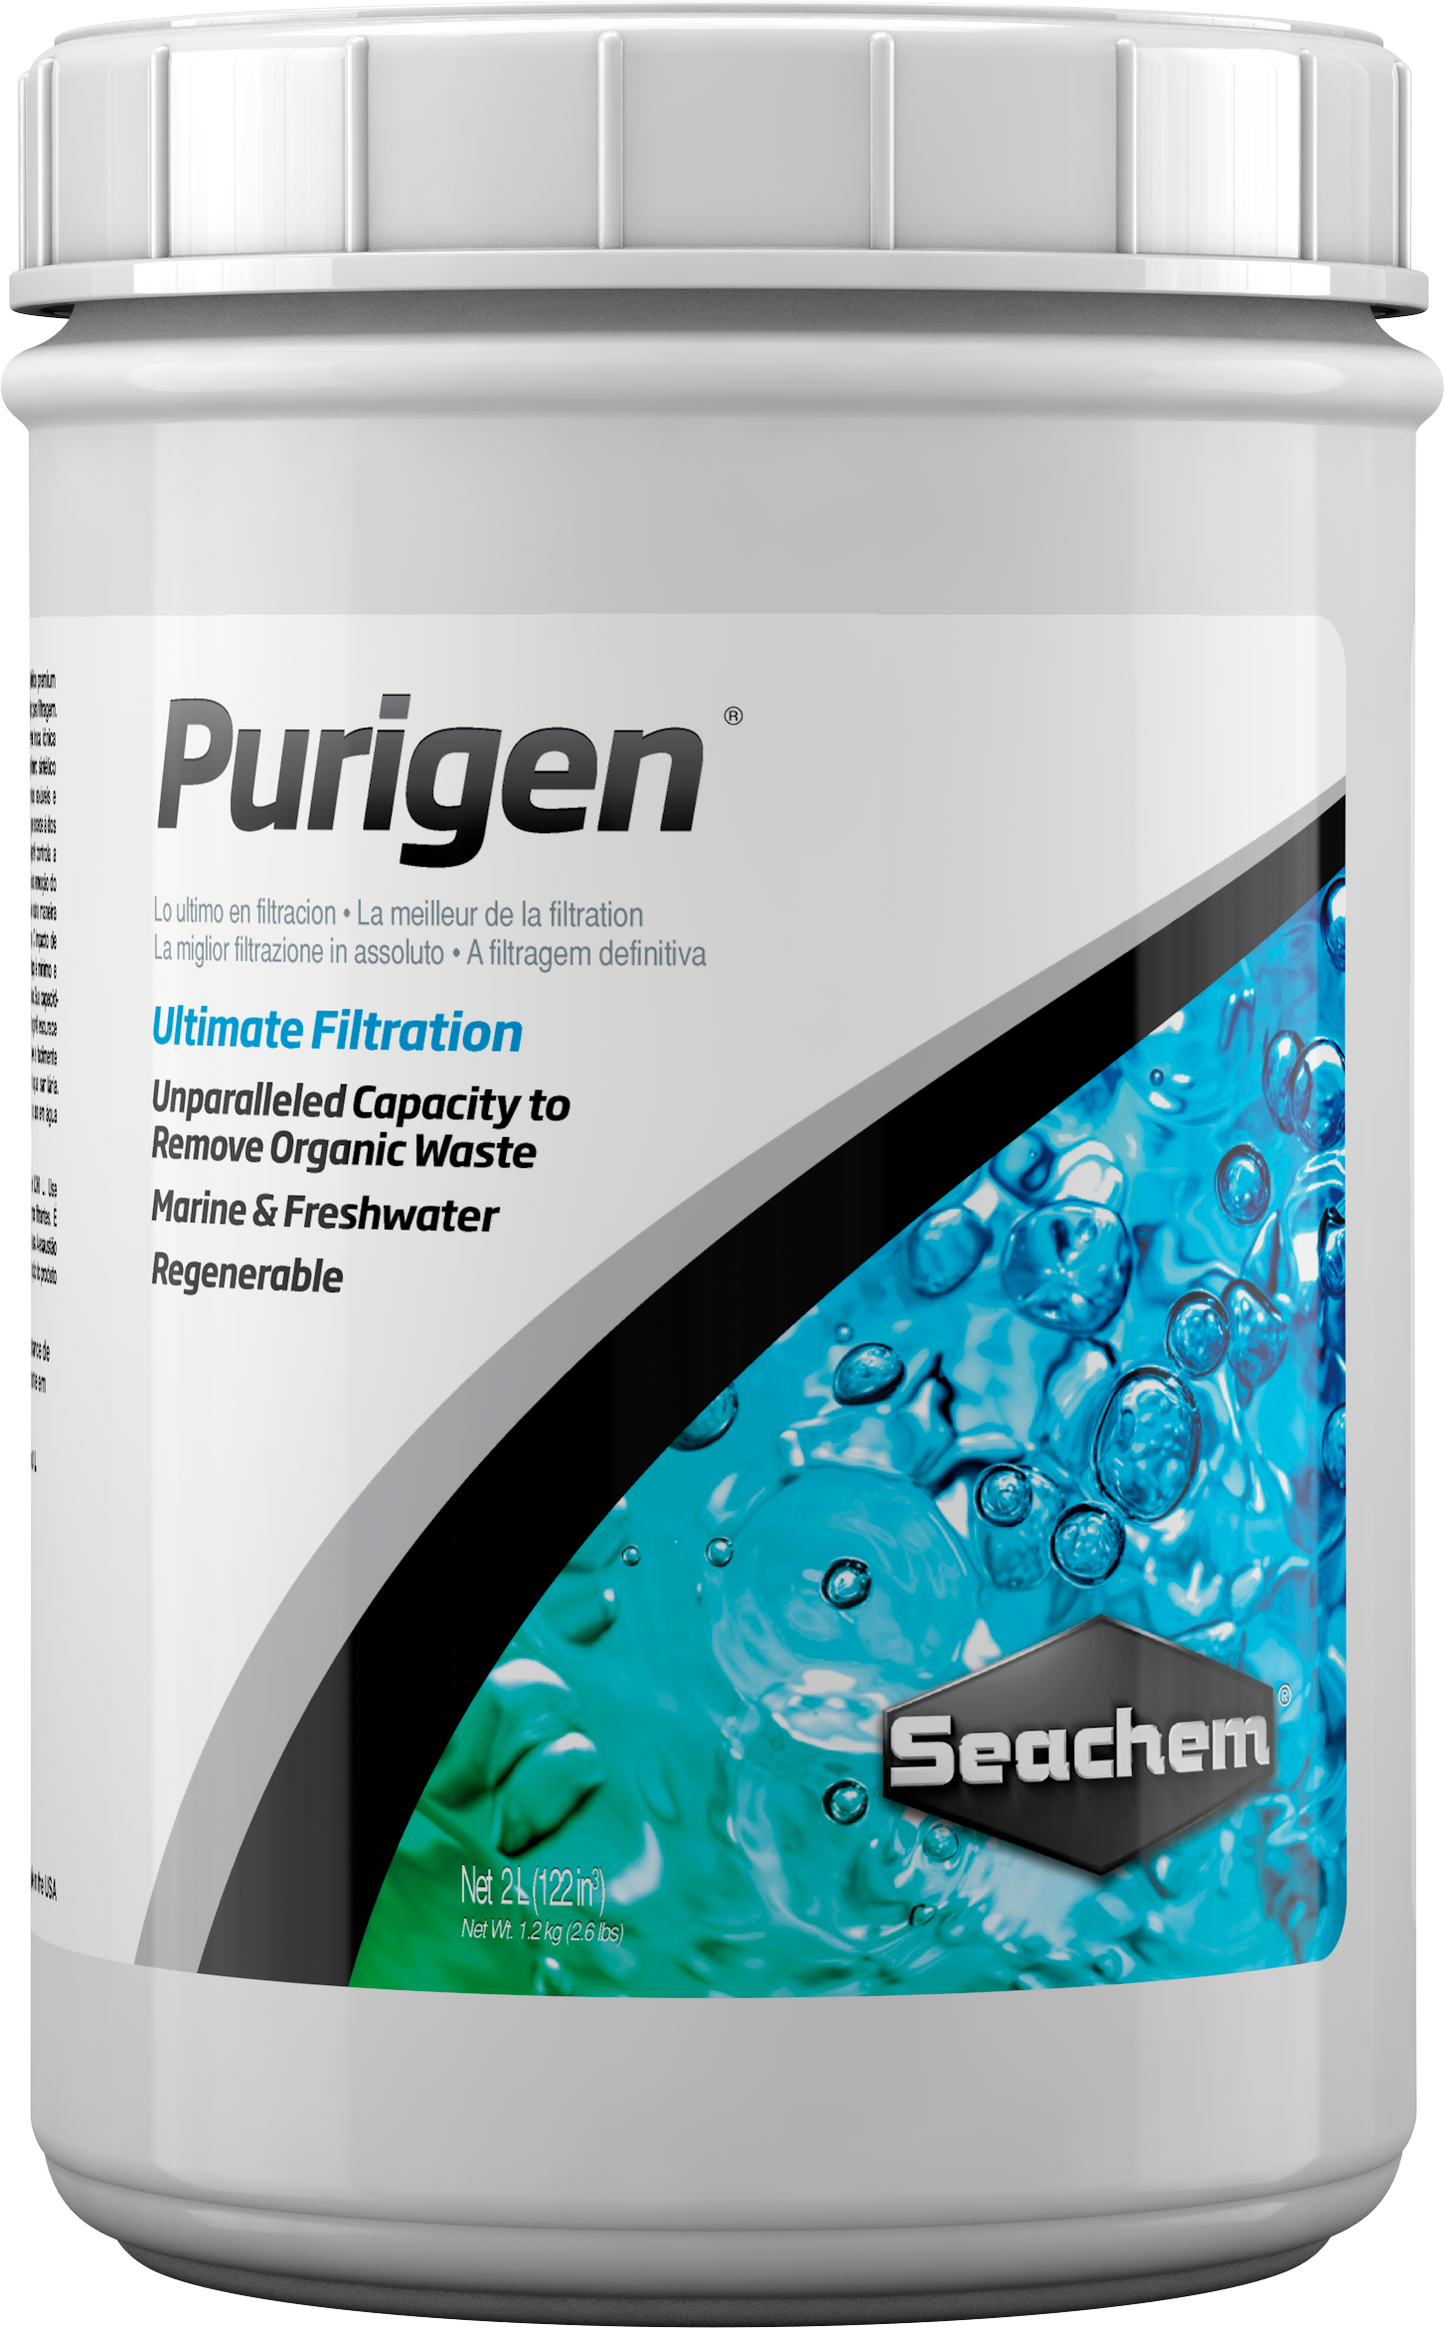 seachem-purigen-2-liter